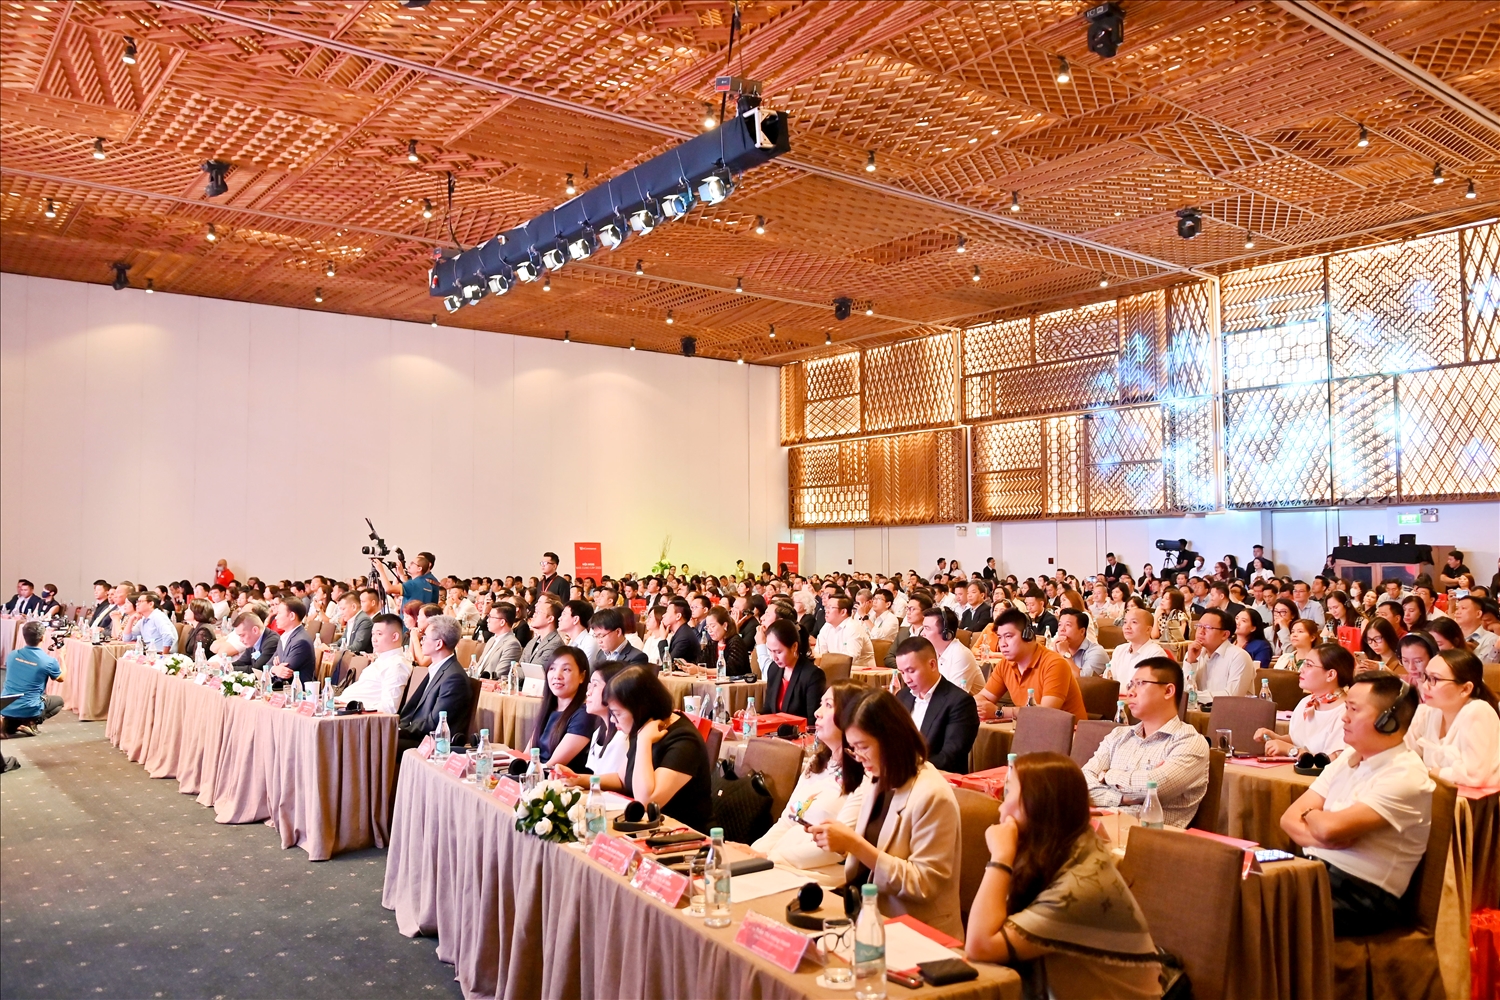 Hội nghị Nhà cung cấp 2022 với sự góp mặt của 350 khách mời, đại diện cho các đối tác lớn trong và ngoài nước